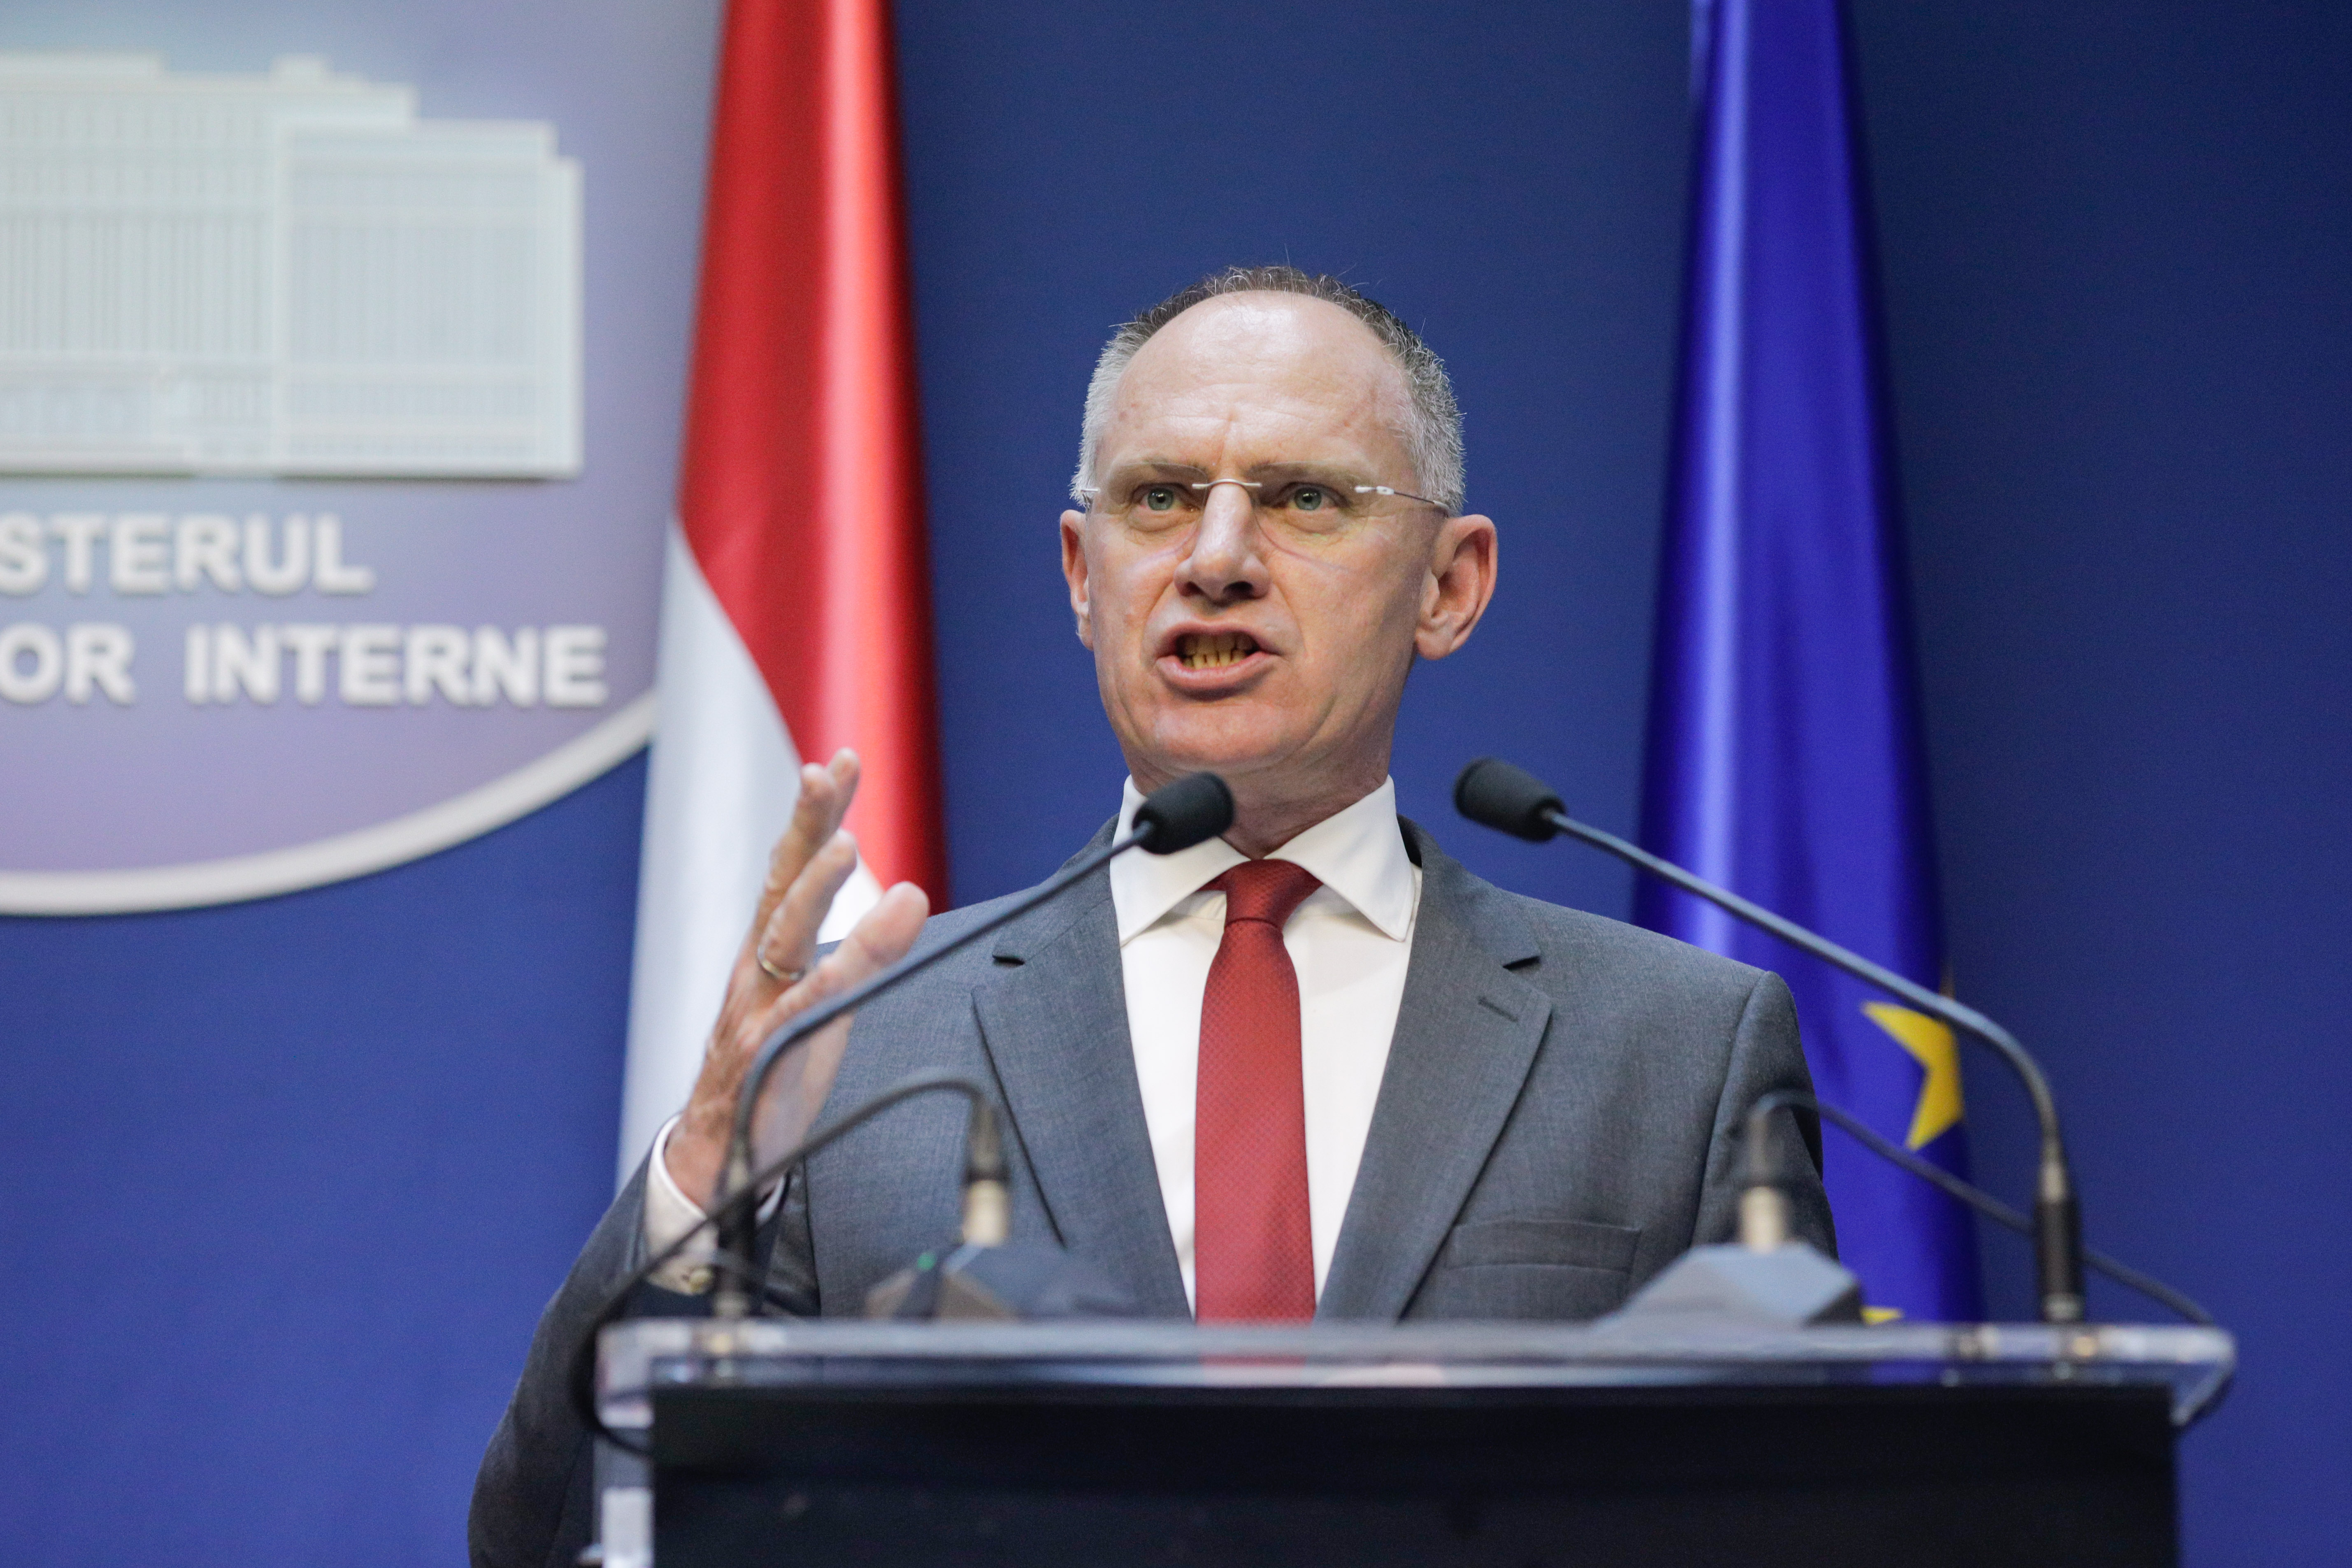 Austria’s interior minister hasn’t changed his mind on Schengen enlargement